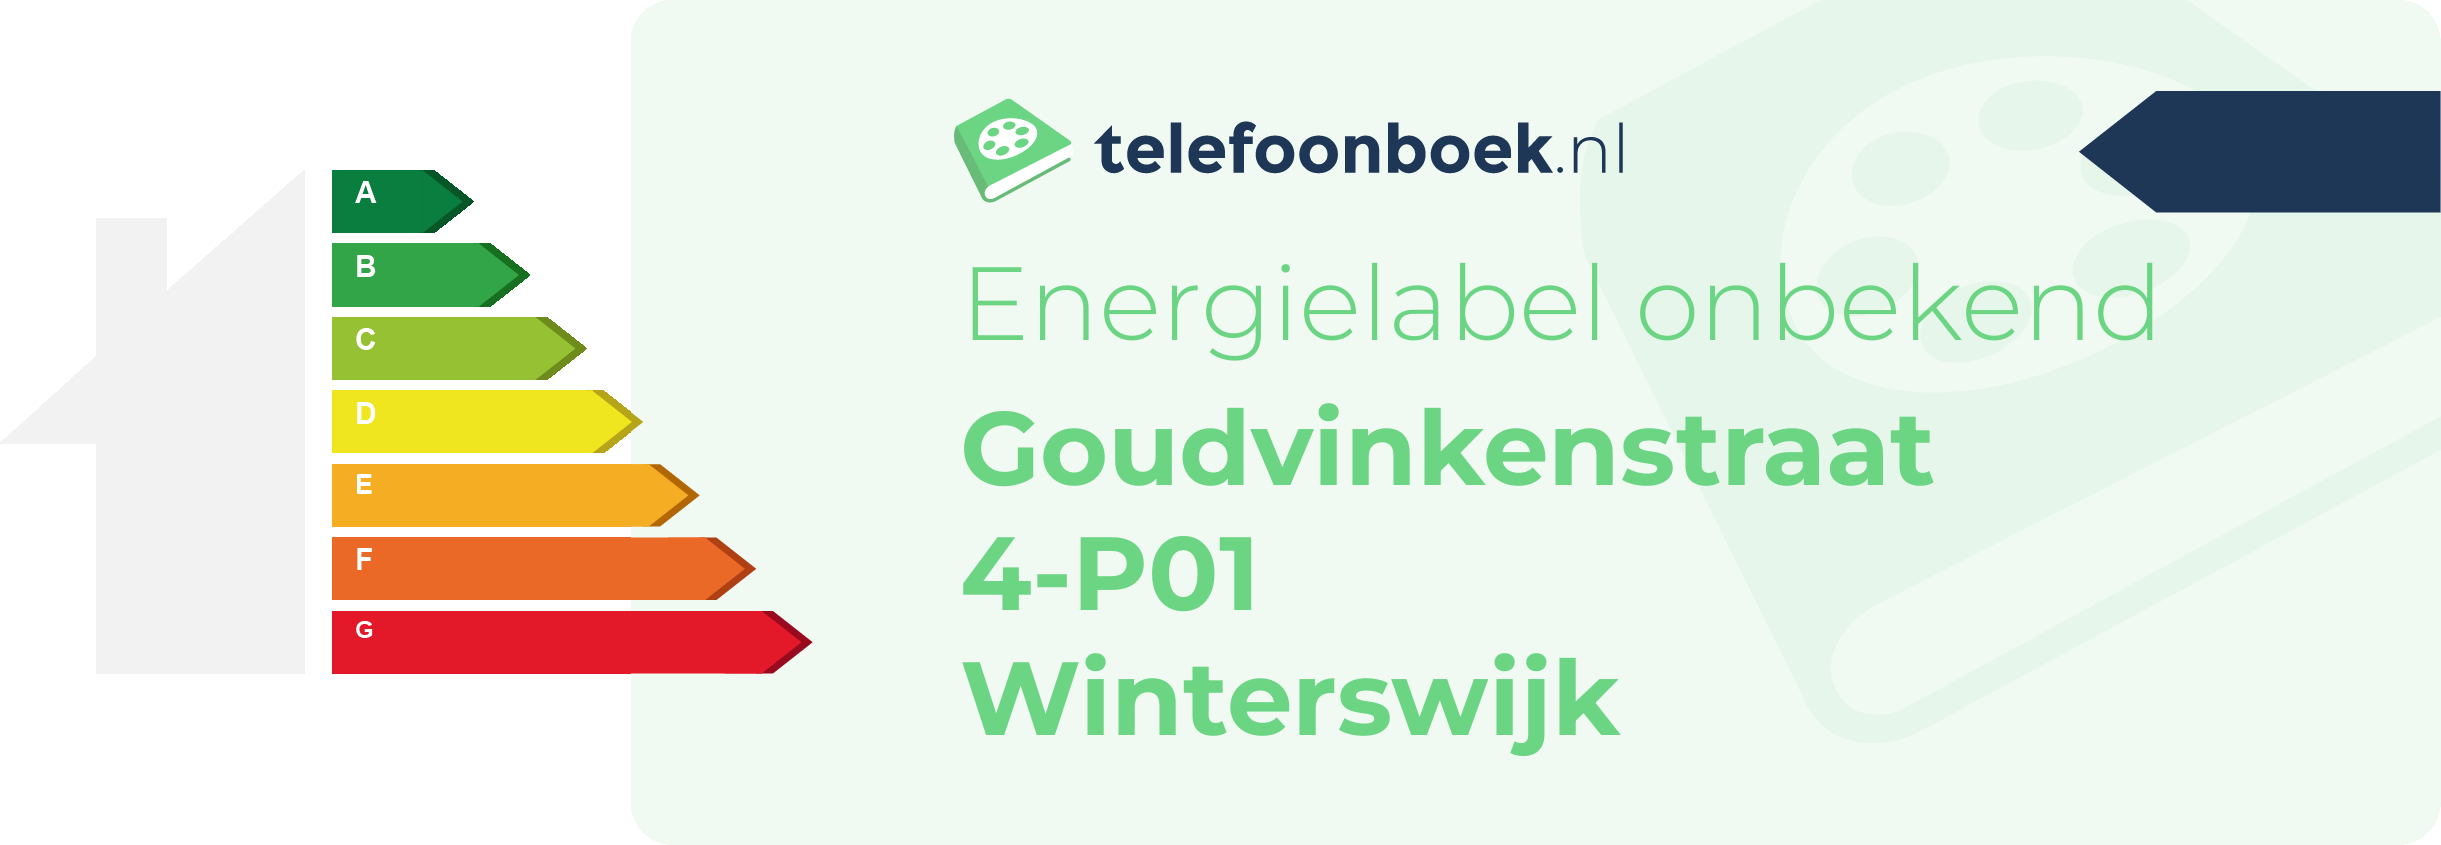 Energielabel Goudvinkenstraat 4-P01 Winterswijk